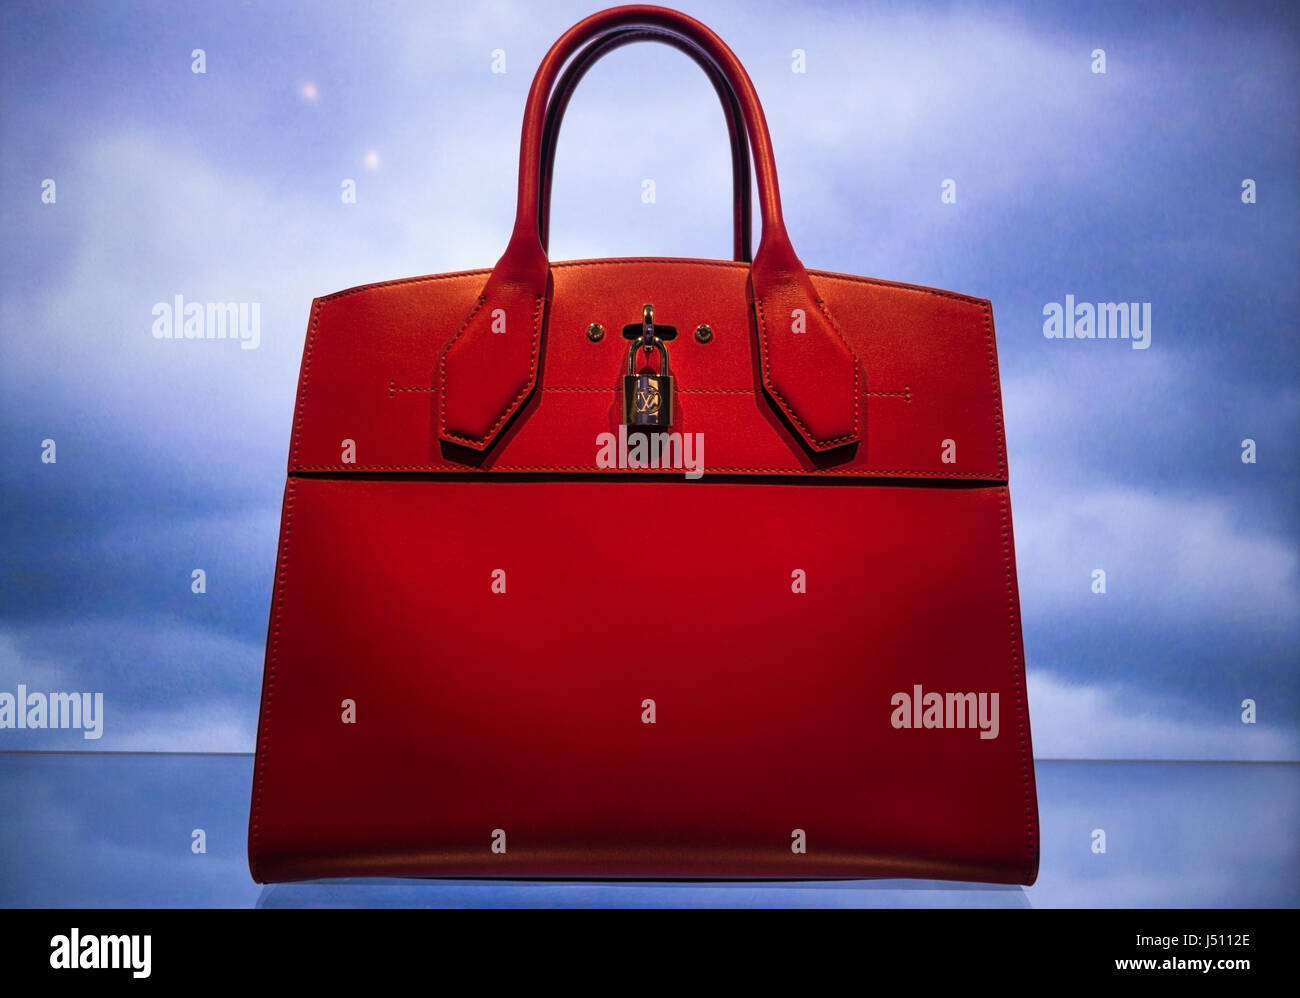 Louis Vuitton sac steamer ville rouge sur l'affichage numérique avec fond de ciel Banque D'Images